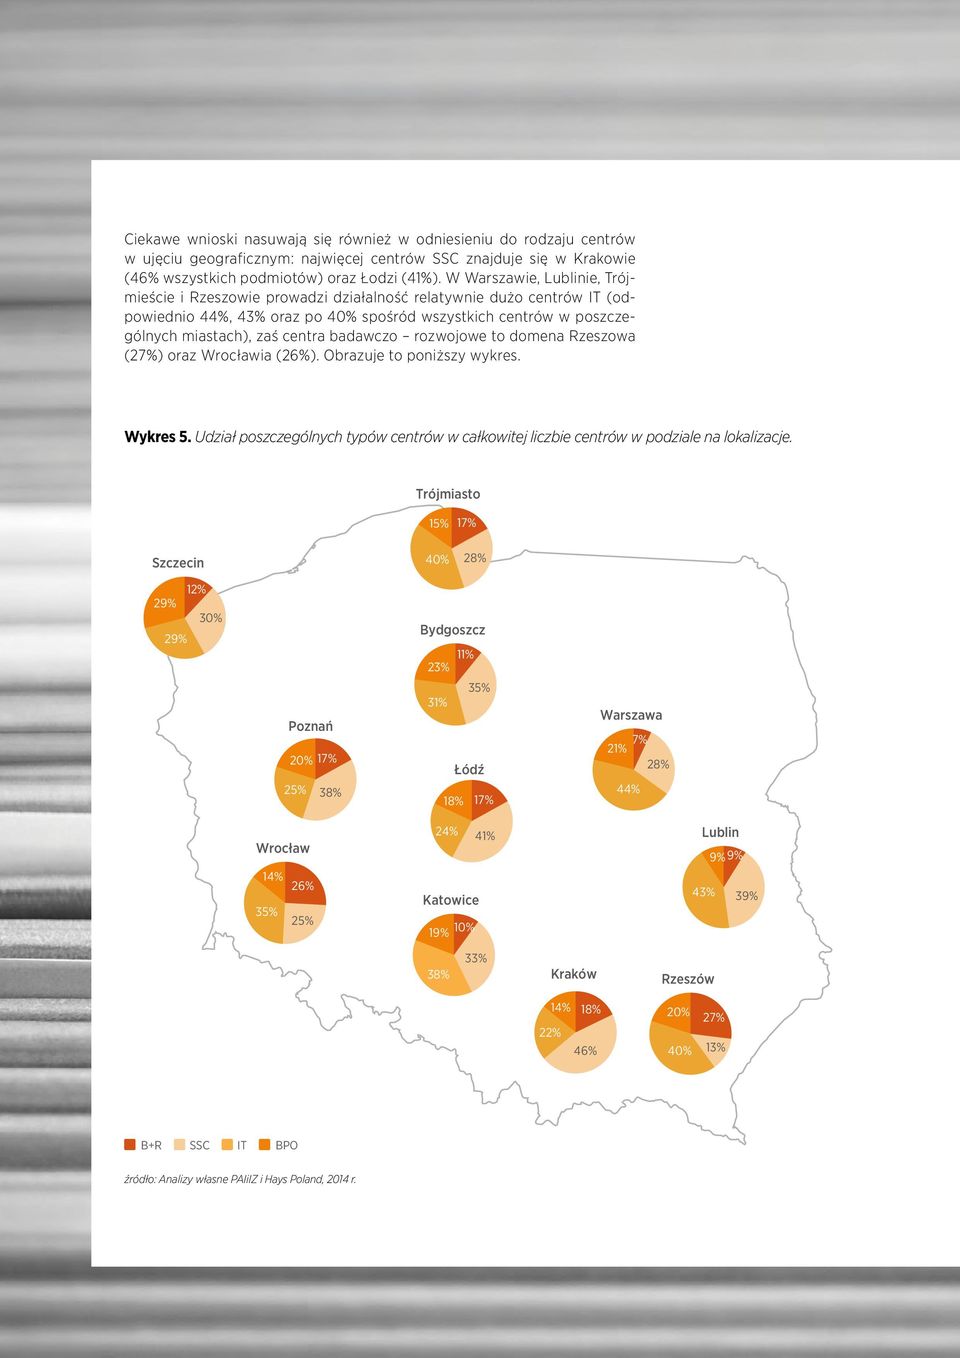 badawczo rozwojowe to domena Rzeszowa (27%) oraz Wrocławia (26%). Obrazuje to poniższy wykres. Wykres 5. Udział poszczególnych typów centrów w całkowitej liczbie centrów w podziale na lokalizacje.